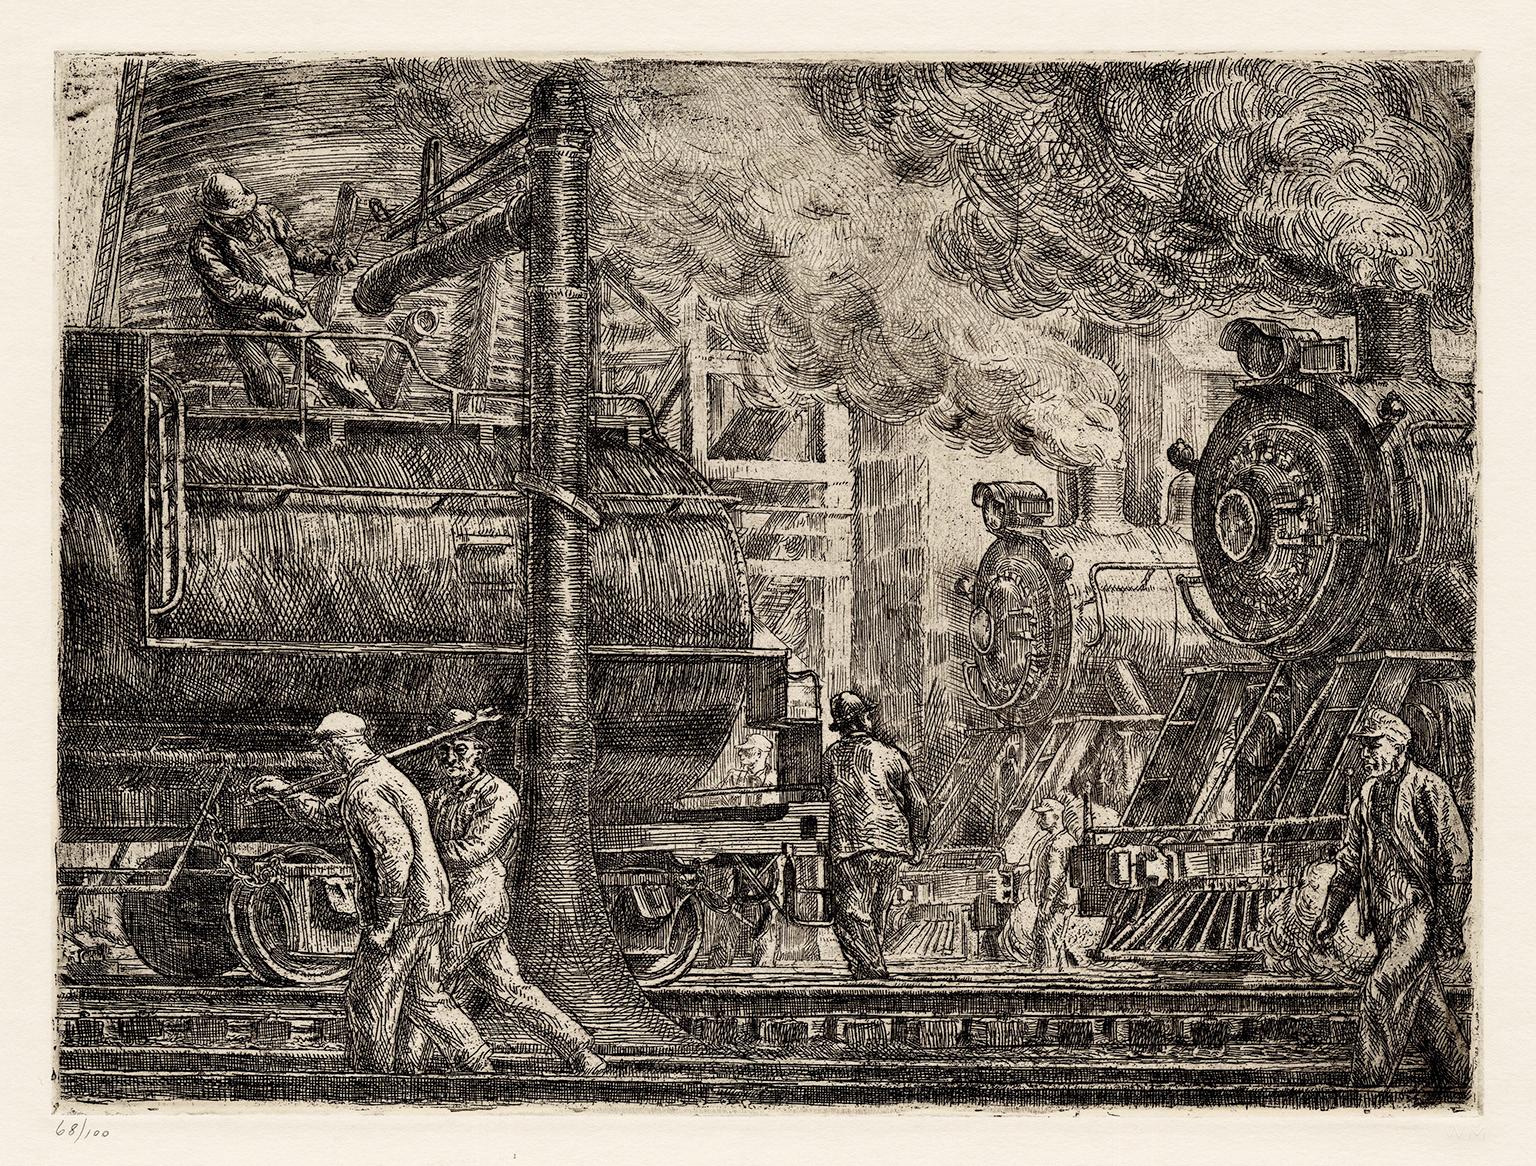 Reginald Marsh Figurative Print – Lokomotiven beim Gießen" - Sozialer Realismus der 1930er Jahre